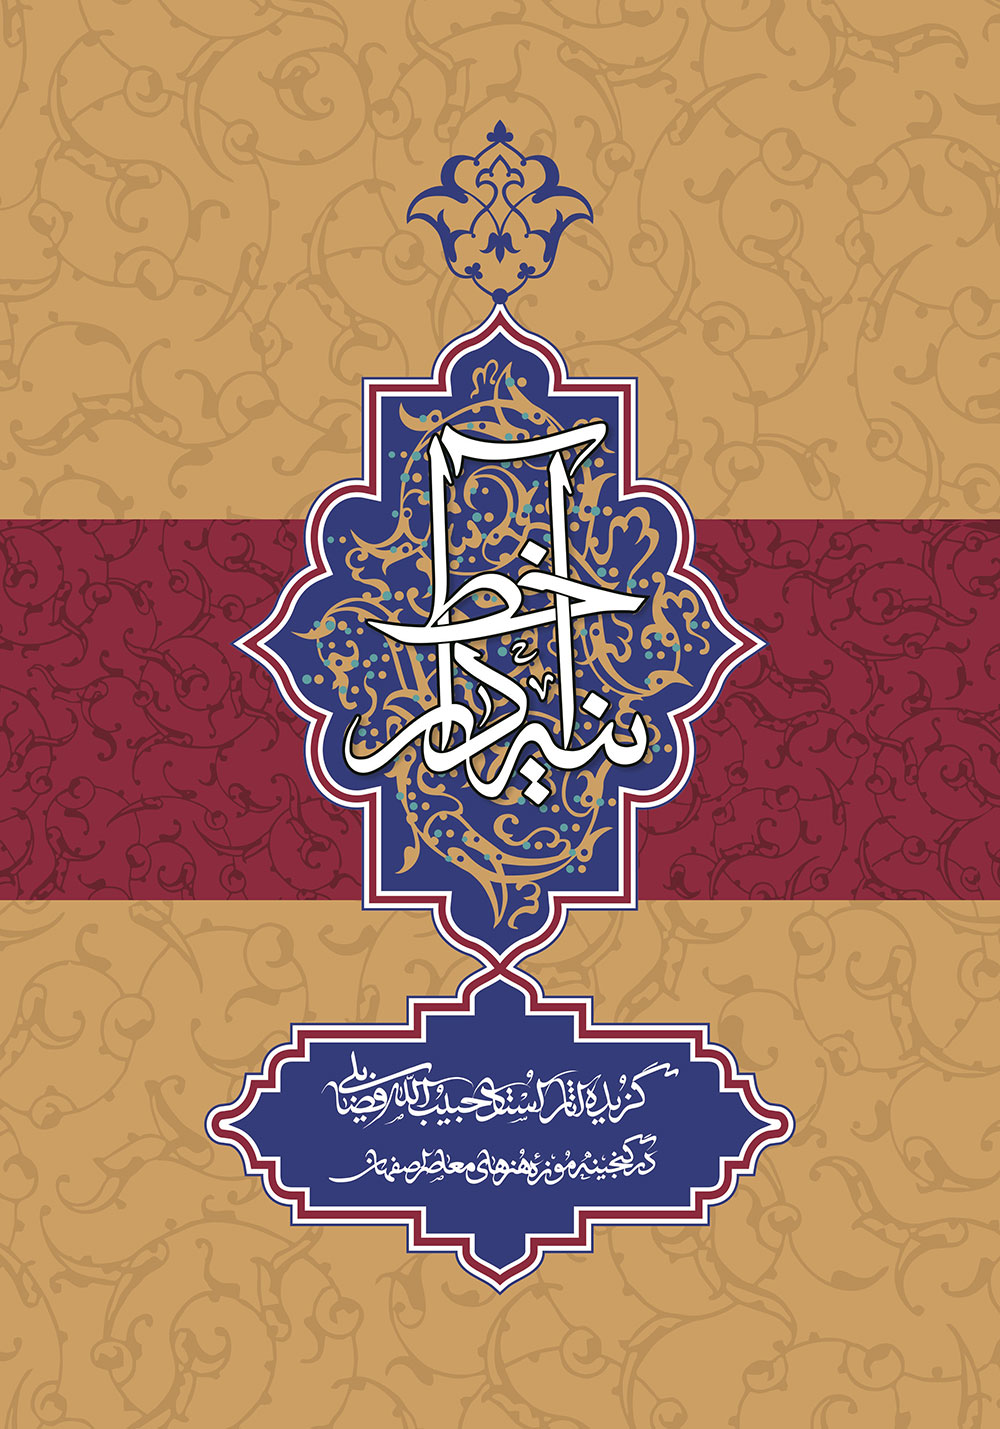 آثار خوشنویسی "حبیب اله فضایلی" همراه با رونمایی کتاب ایشان با عنوان"آینه دار خط"